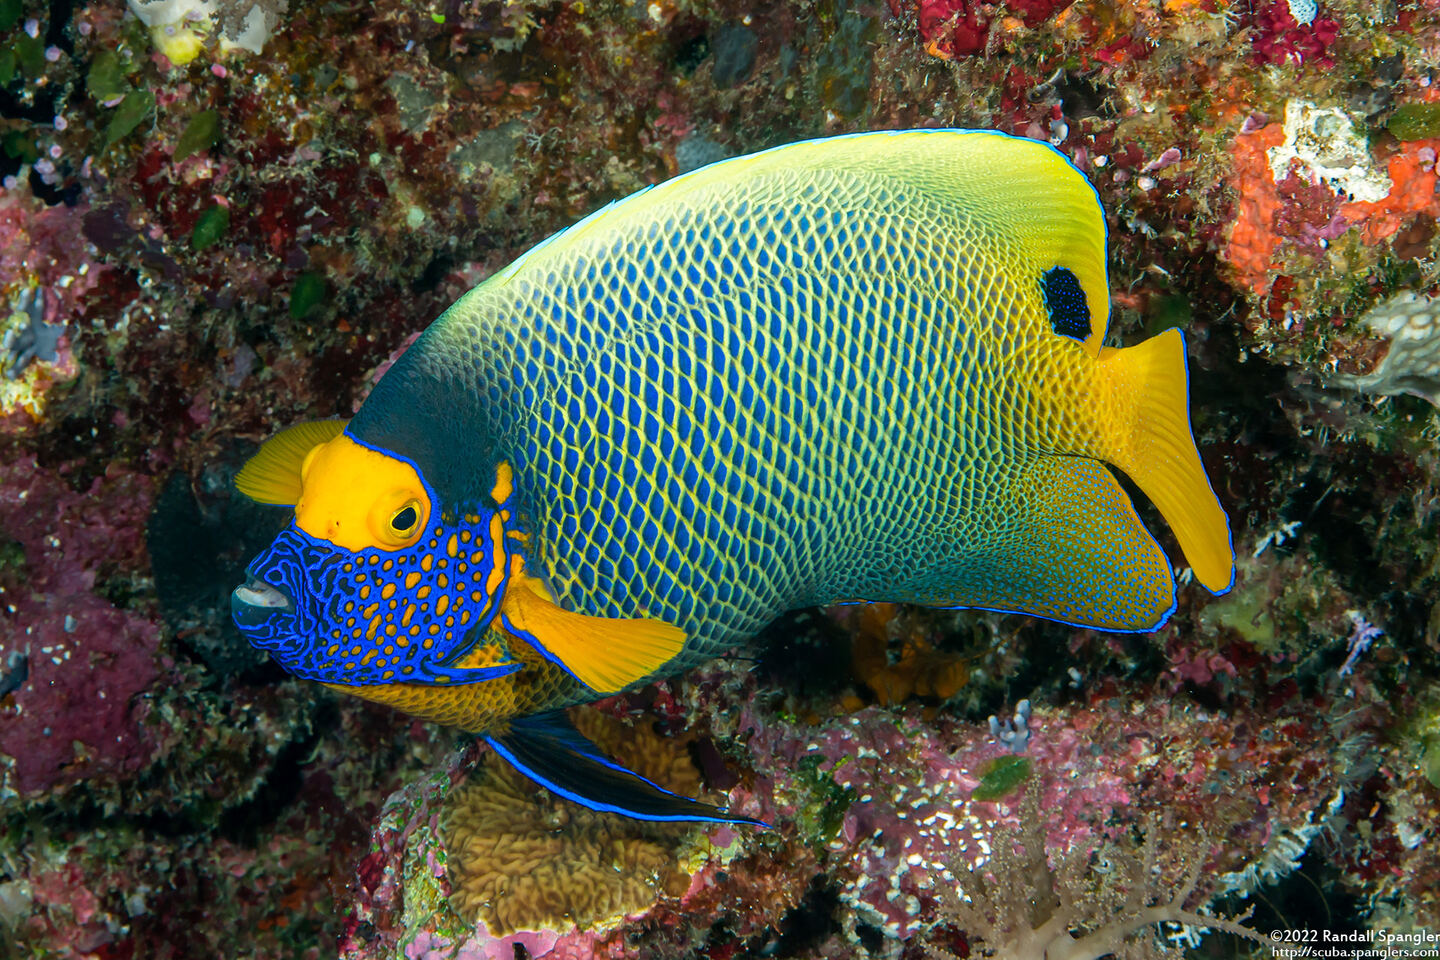 Pomacanthus xanthometopon (Yellow-Mask Angelfish)